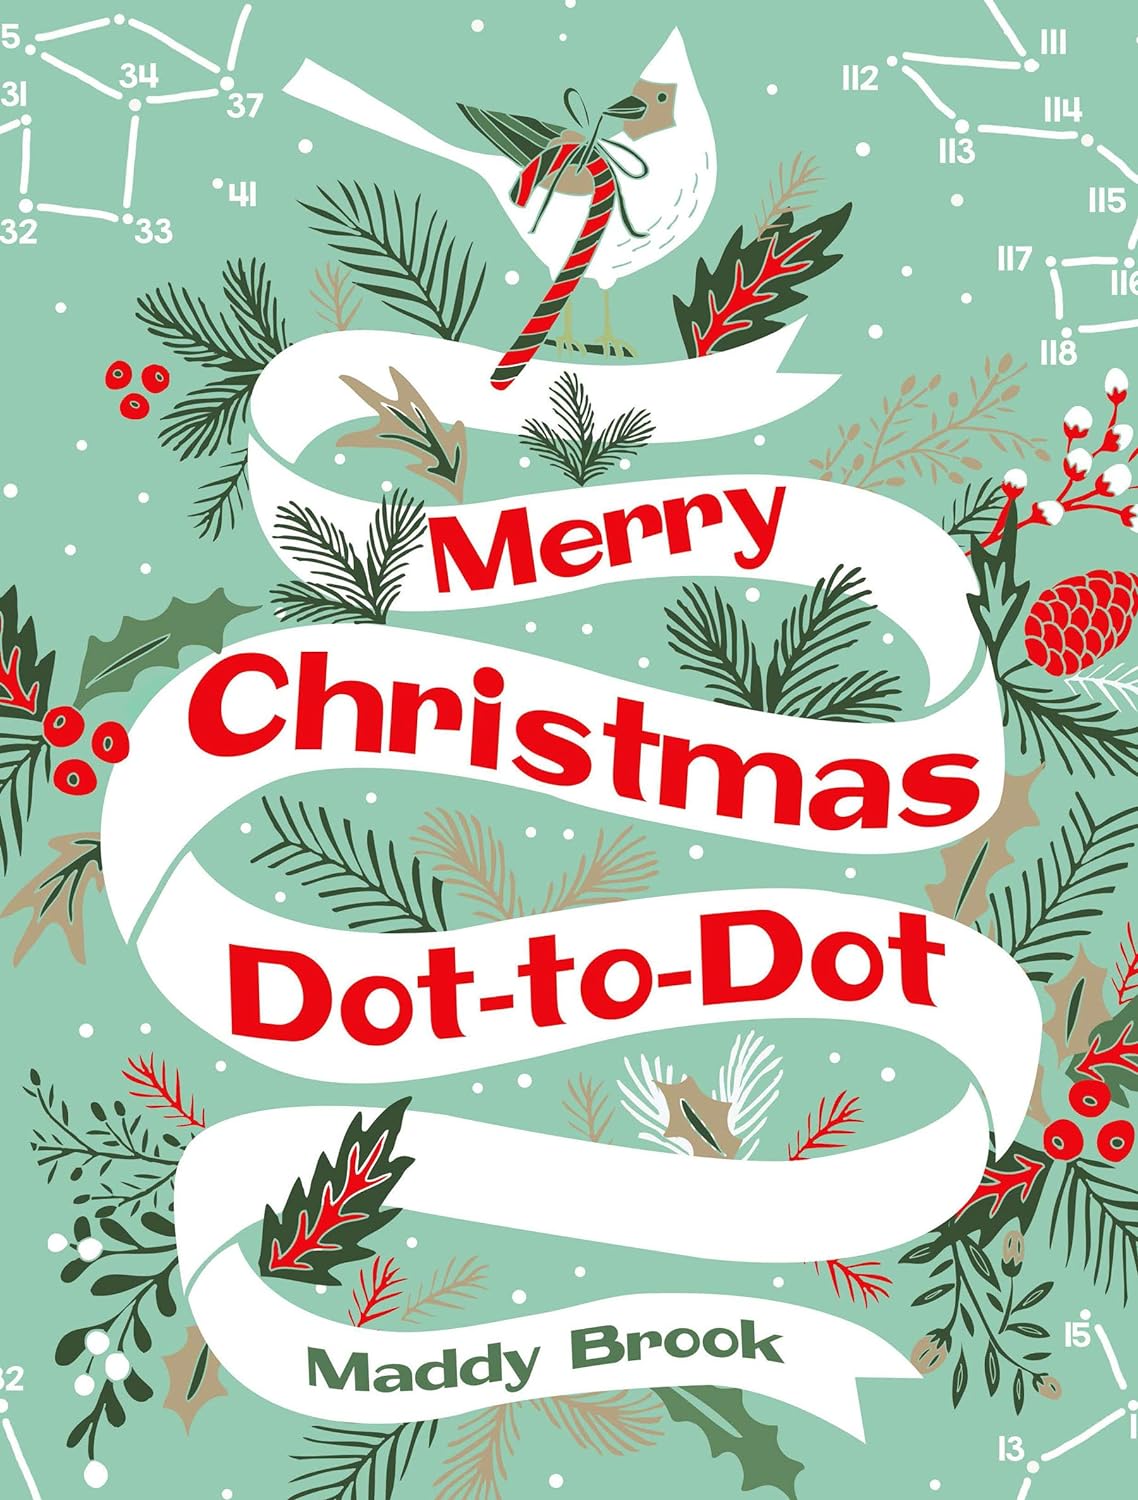 Merry Christmas Dot-to-dot